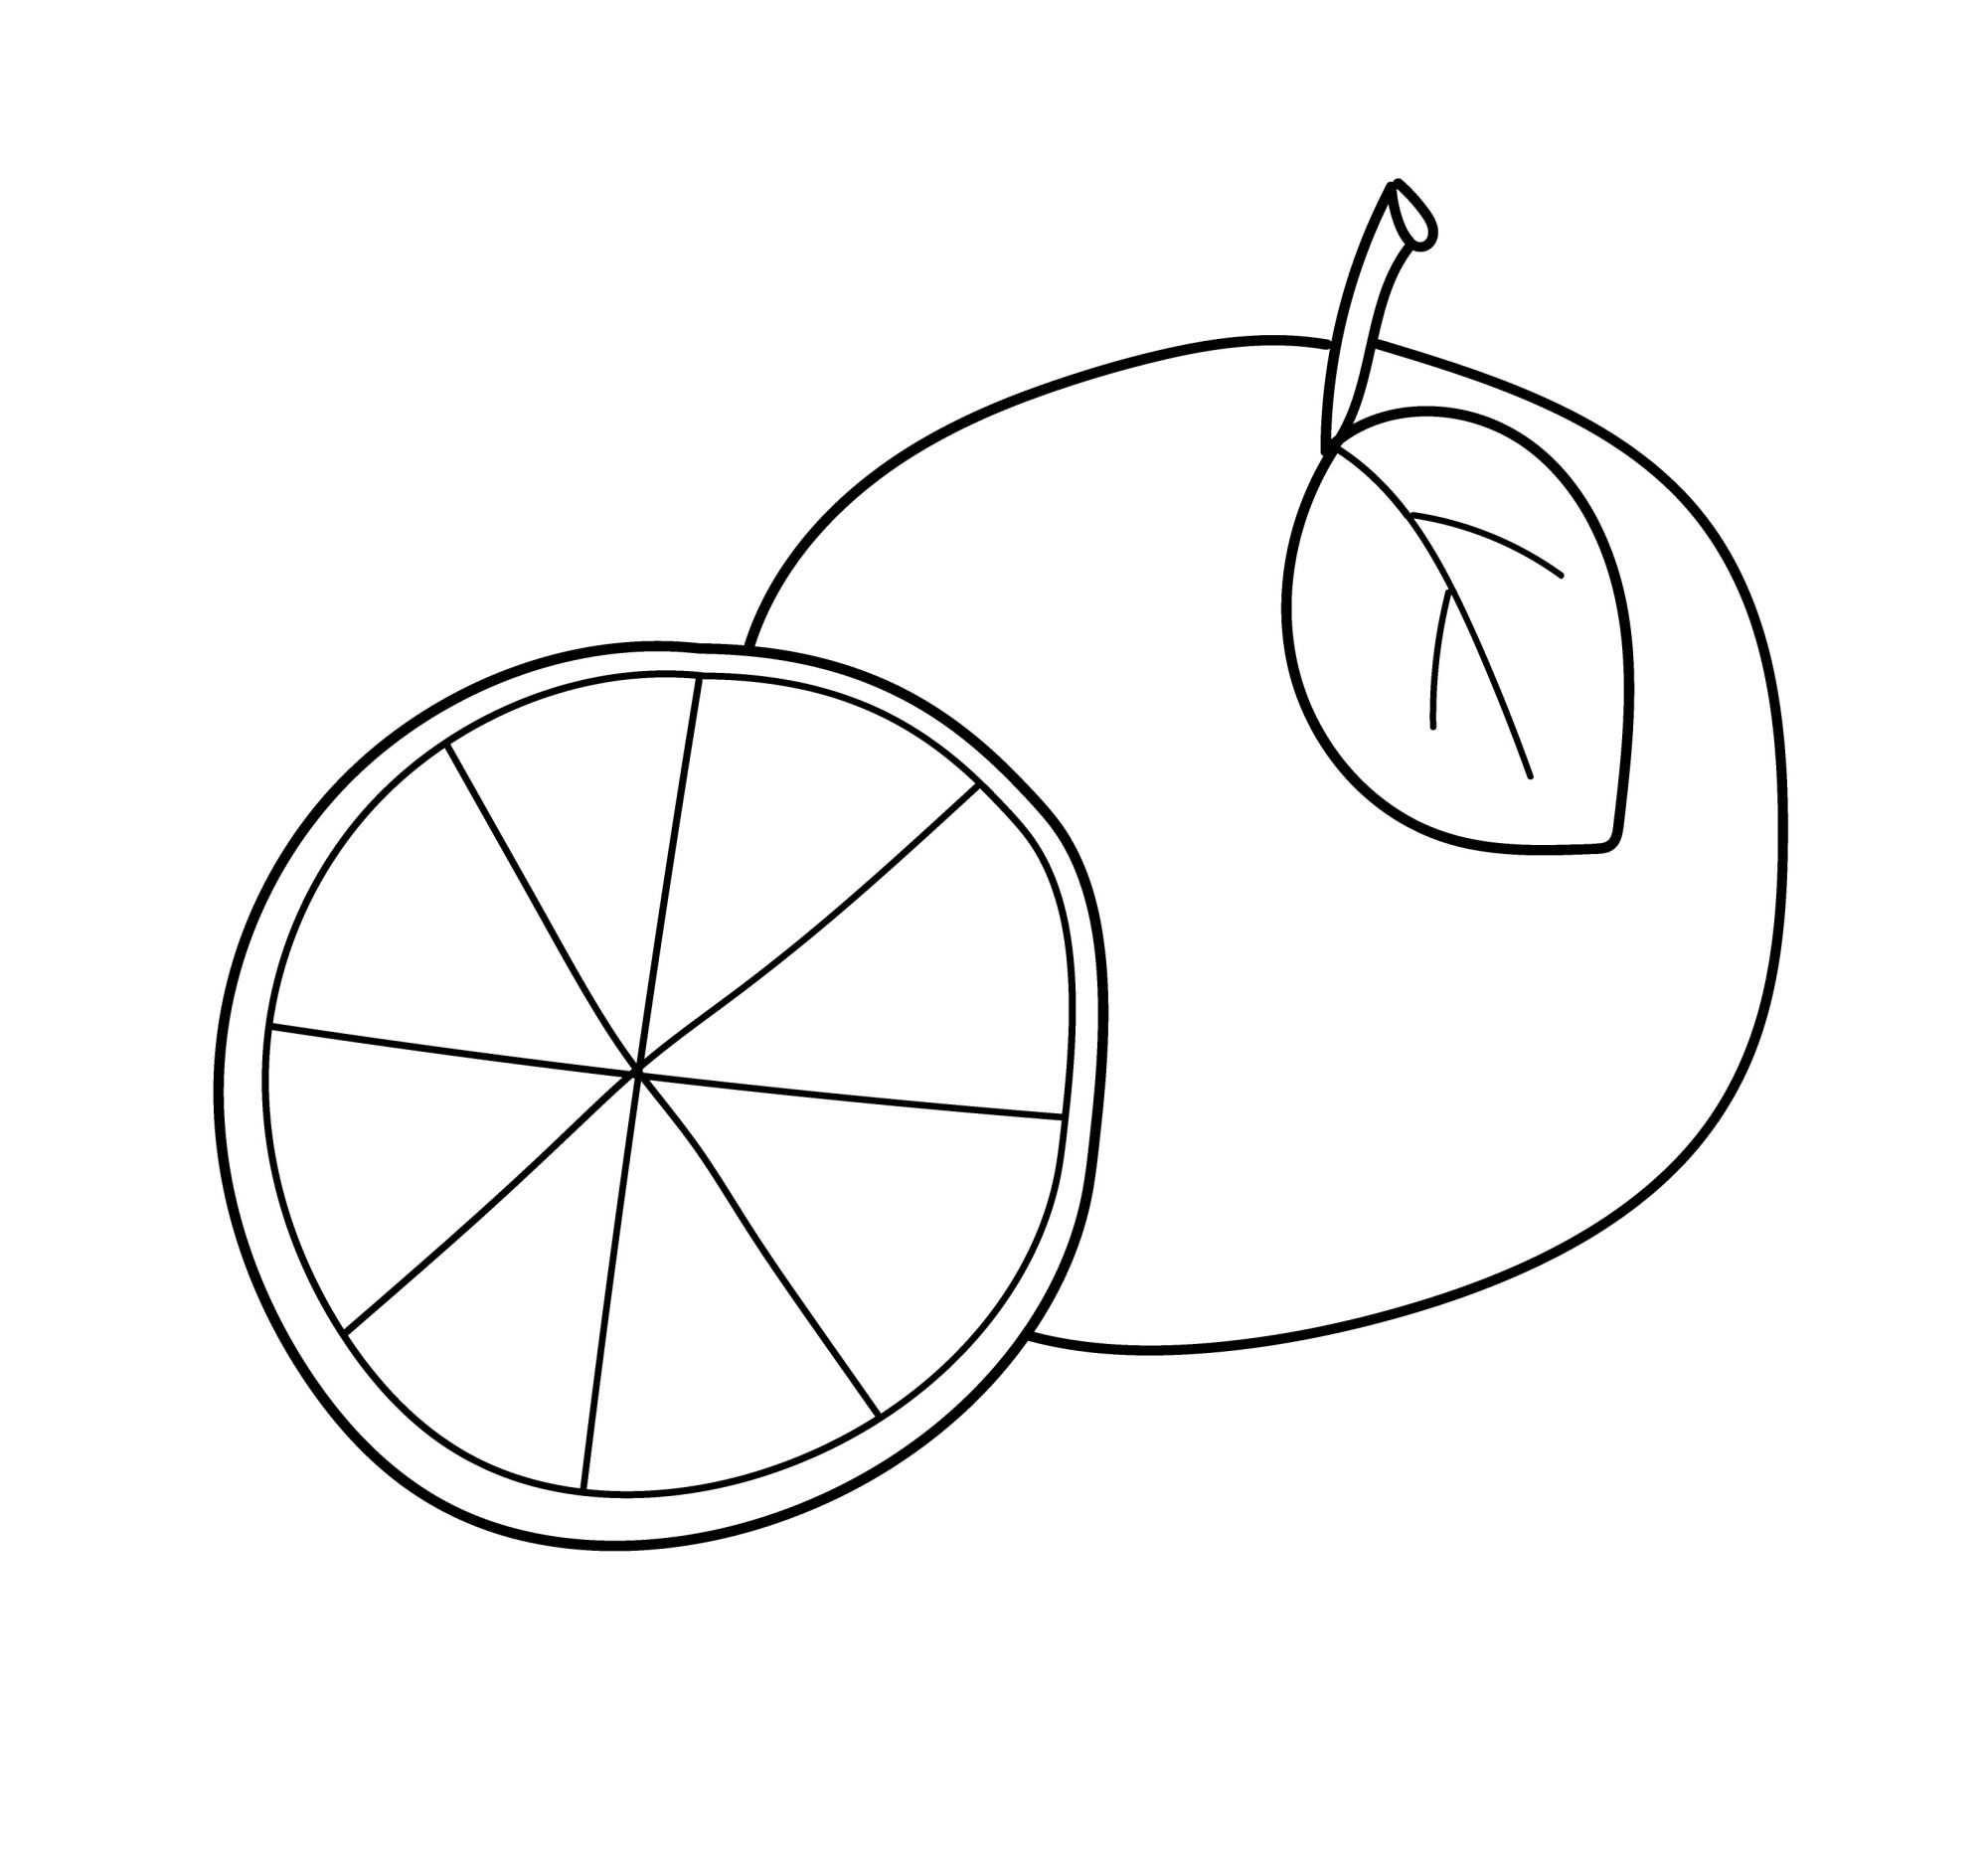 Раскраска для детей: сладкий апельсин с половинкой